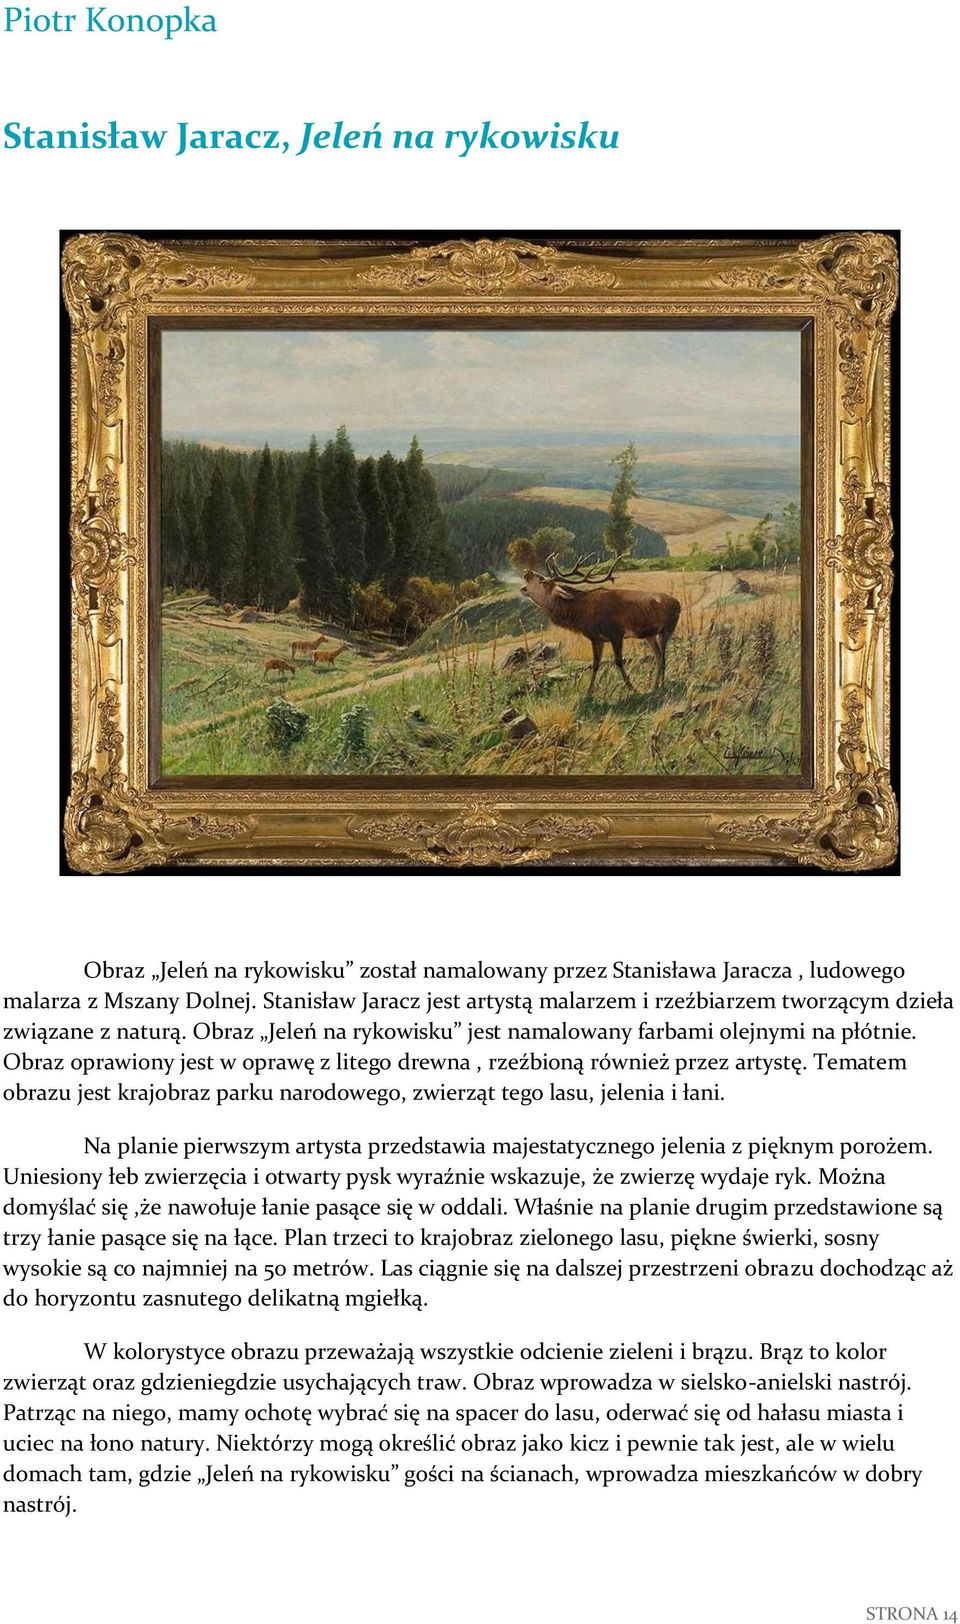 Obraz oprawiony jest w oprawę z litego drewna, rzeźbioną również przez artystę. Tematem obrazu jest krajobraz parku narodowego, zwierząt tego lasu, jelenia i łani.